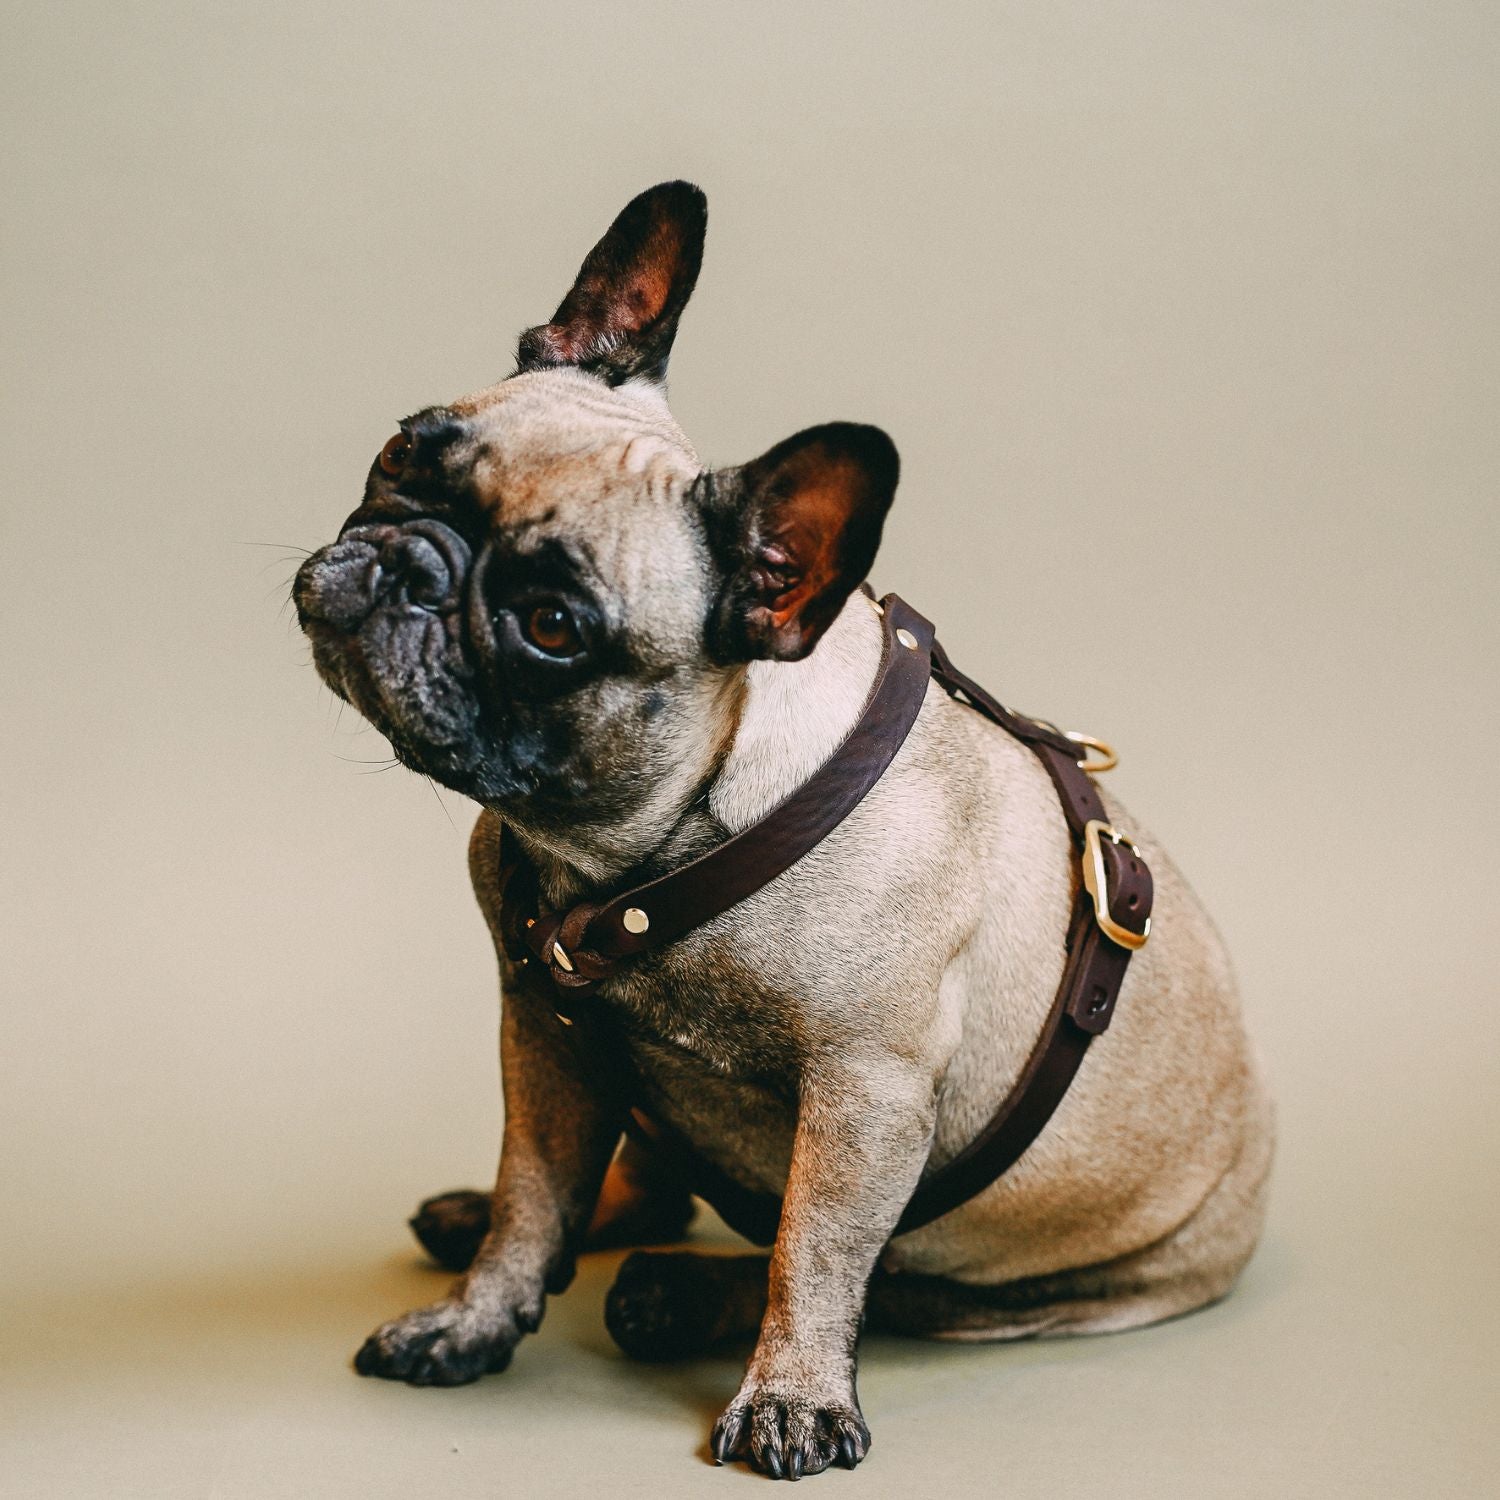 Dog harness 'Bjarki' in chestnut